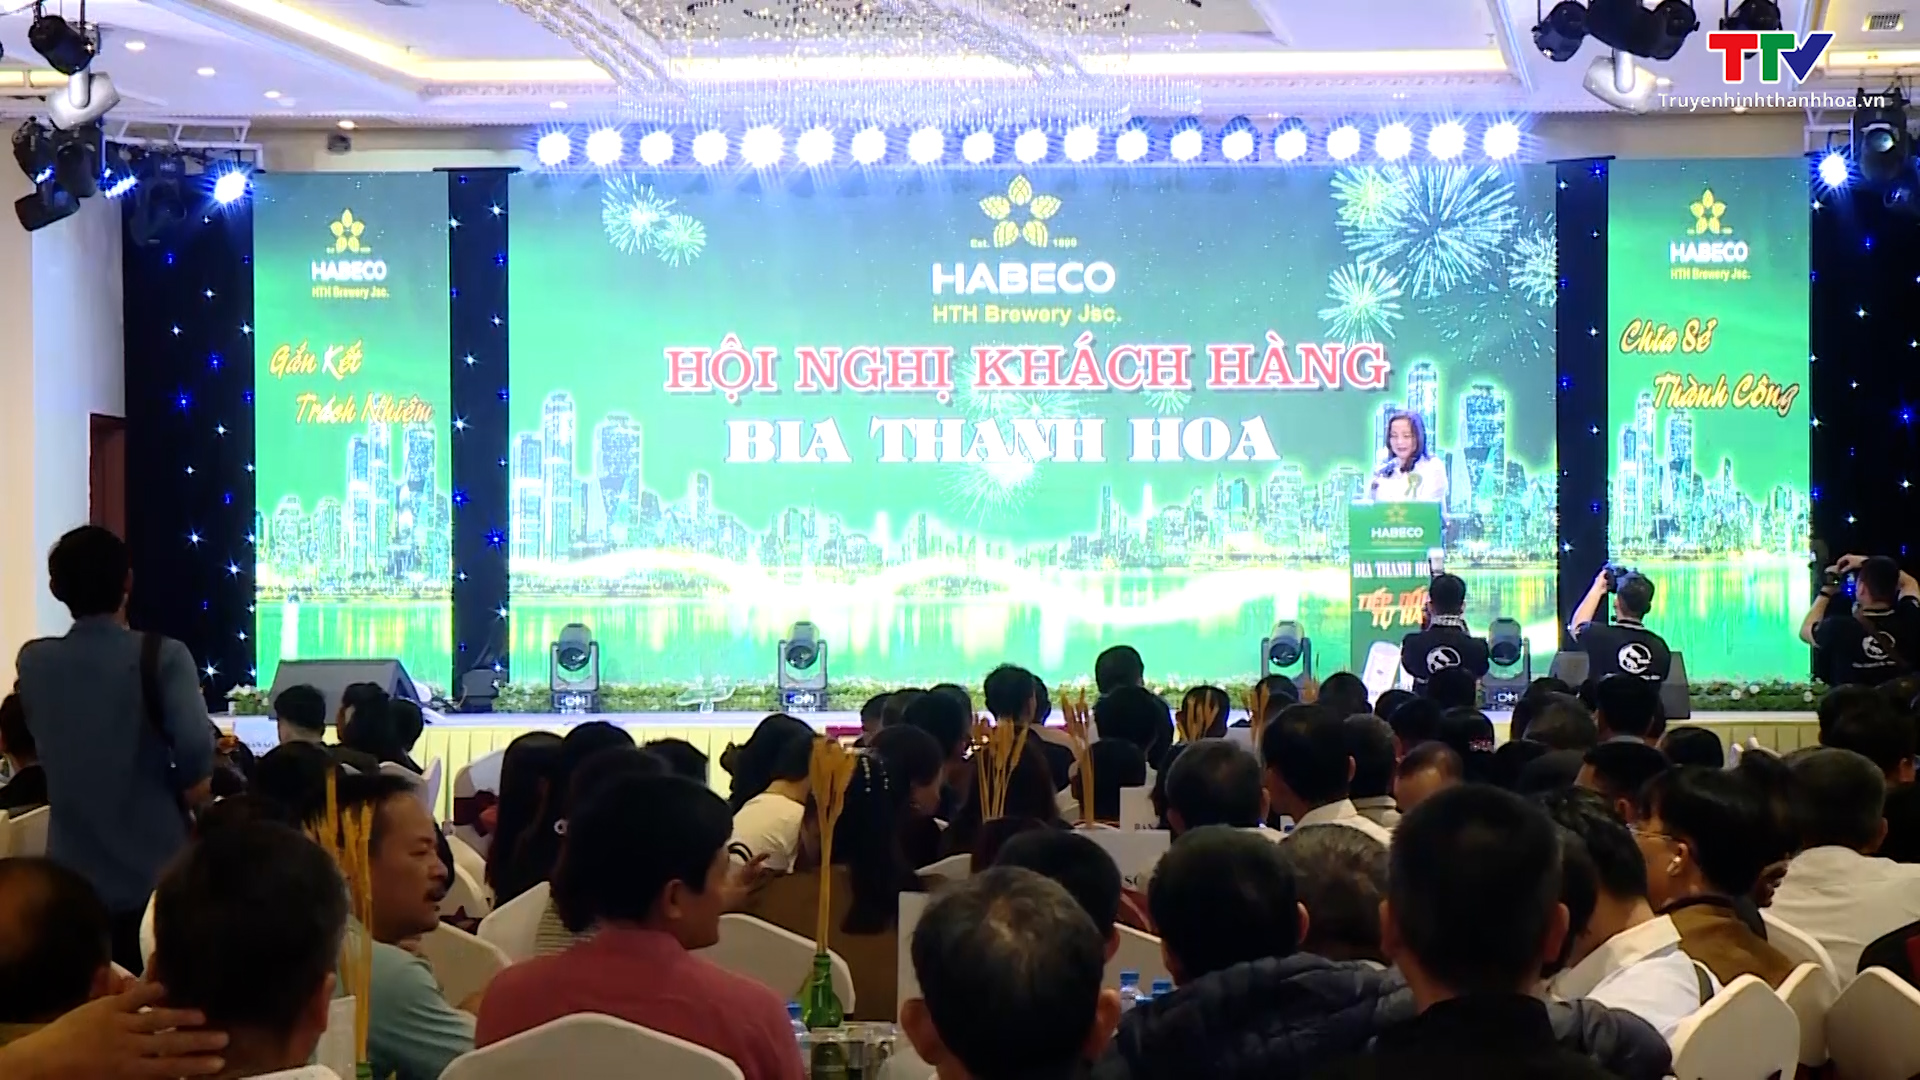 Habeco miền Trung phấn đấu tiêu thụ hơn 33 triệu lít bia Thanh Hoa  - Ảnh 2.